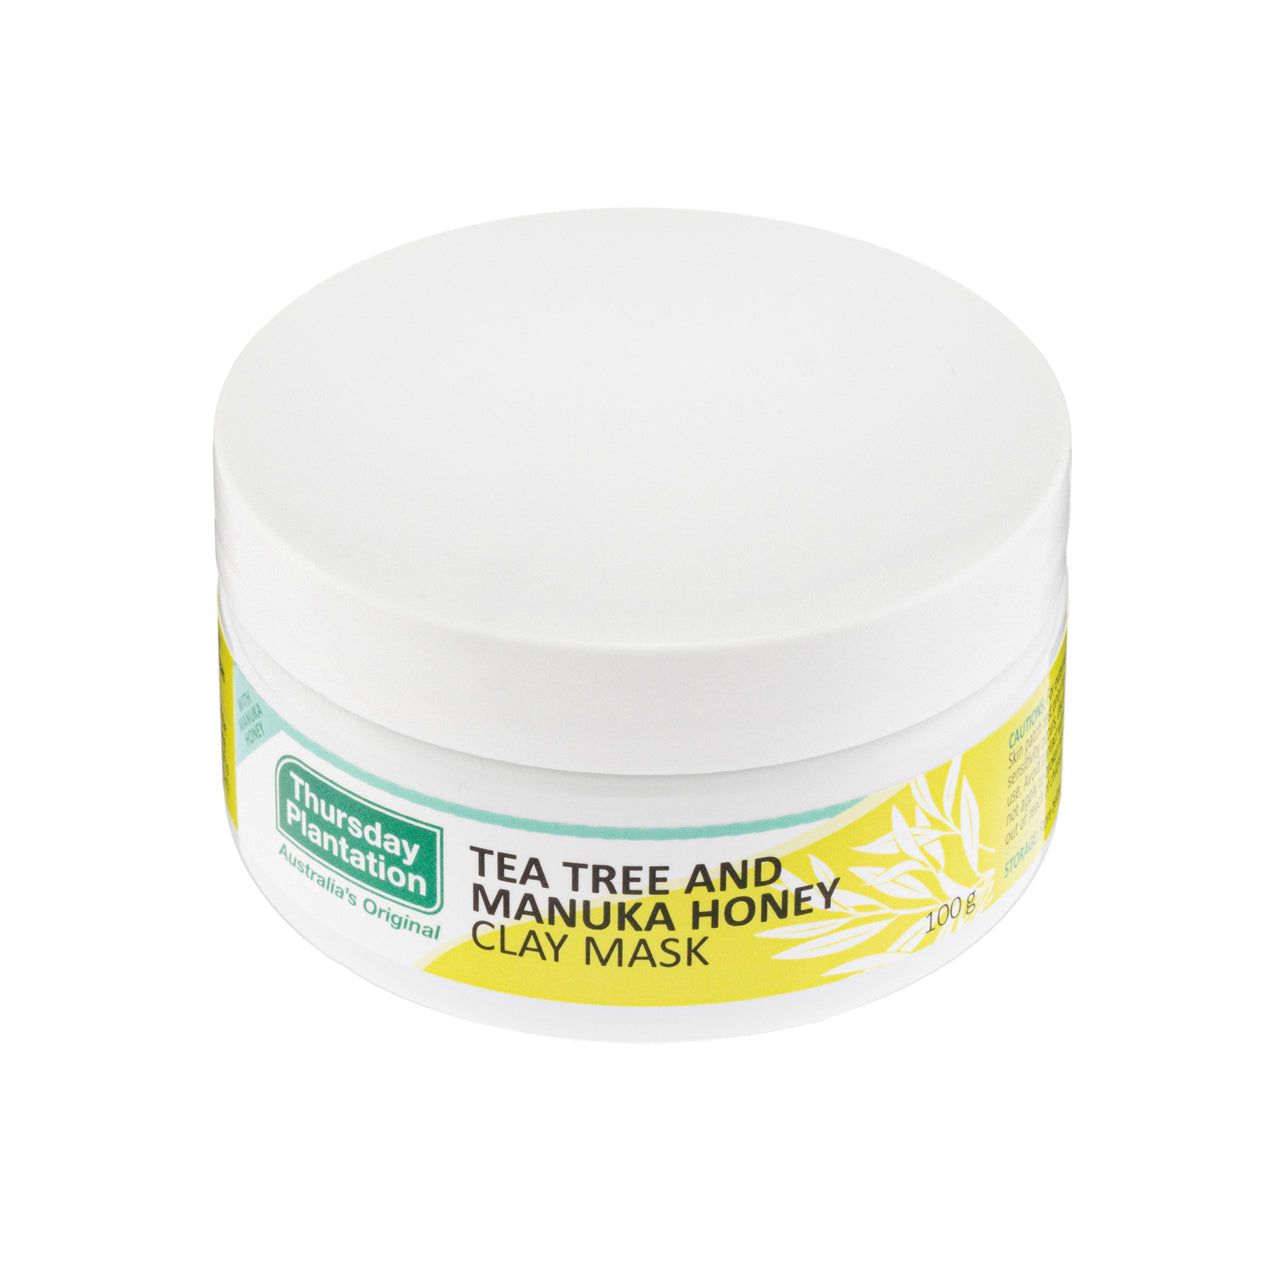 Thursday Plantation Tea Tree & Manuka Honey Clay Mask 100G